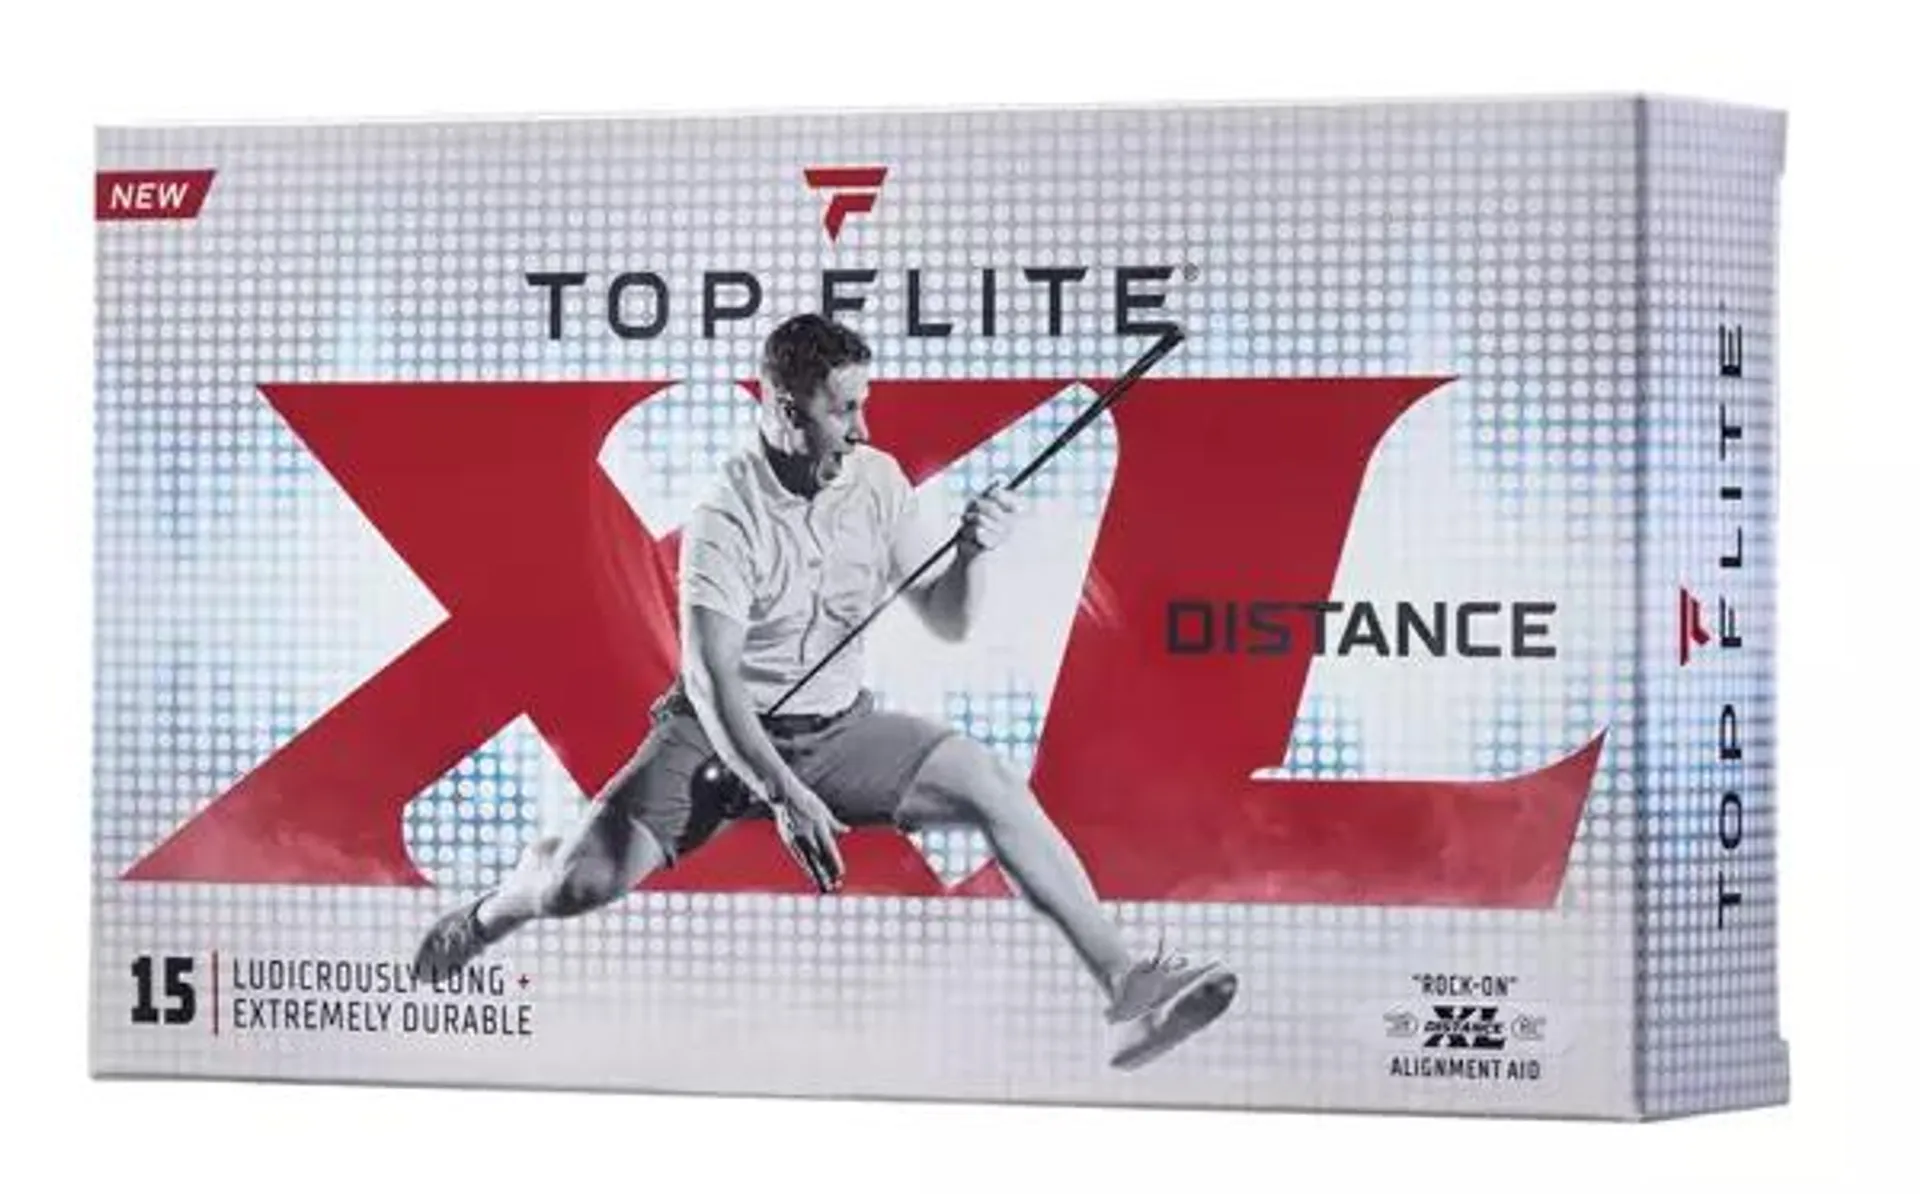 Top Flite 2022 XL Distance Golf Balls - 15 Pack